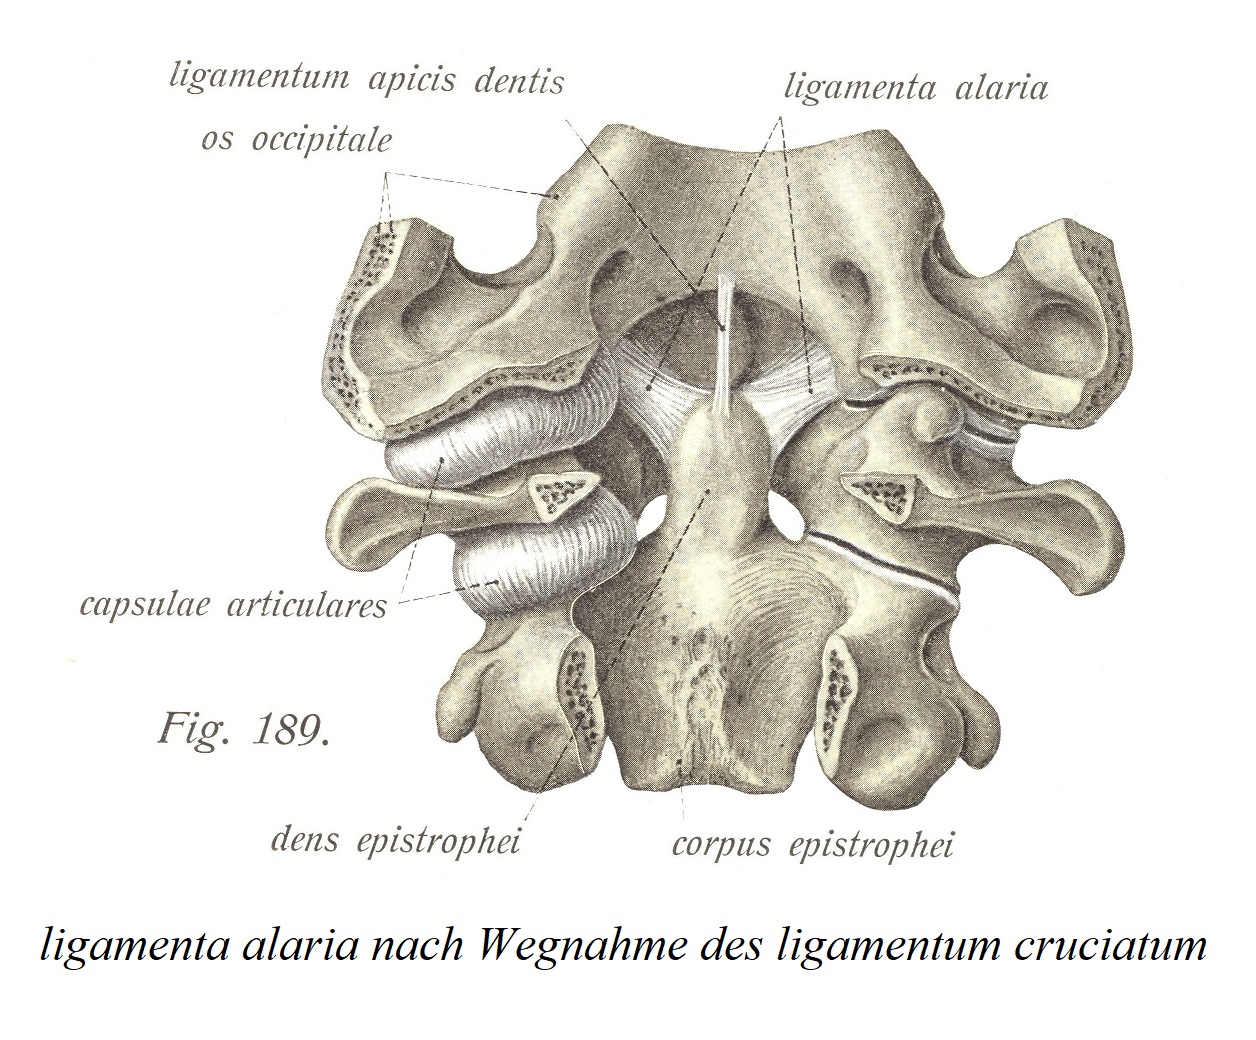 ligamenta alaria после удаления крестообразной связки